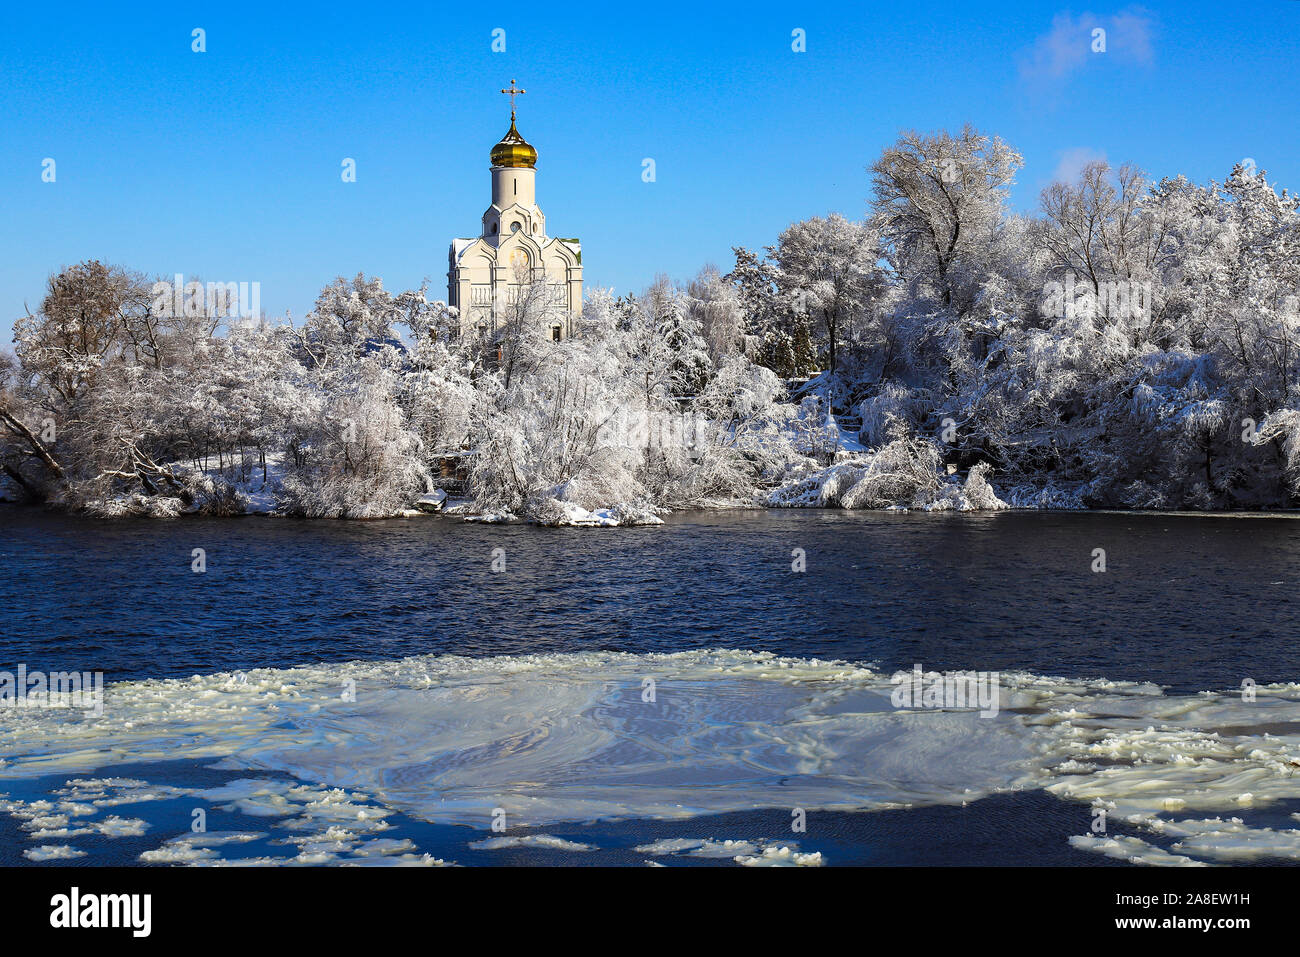 L'Église chrétienne orthodoxe sur le fleuve Dniepr, couverte de glace et de neige. Paysage hivernal de Dnepropetrovsk, Ukraine, Dniepr Dniepropetrovsk, ville Banque D'Images